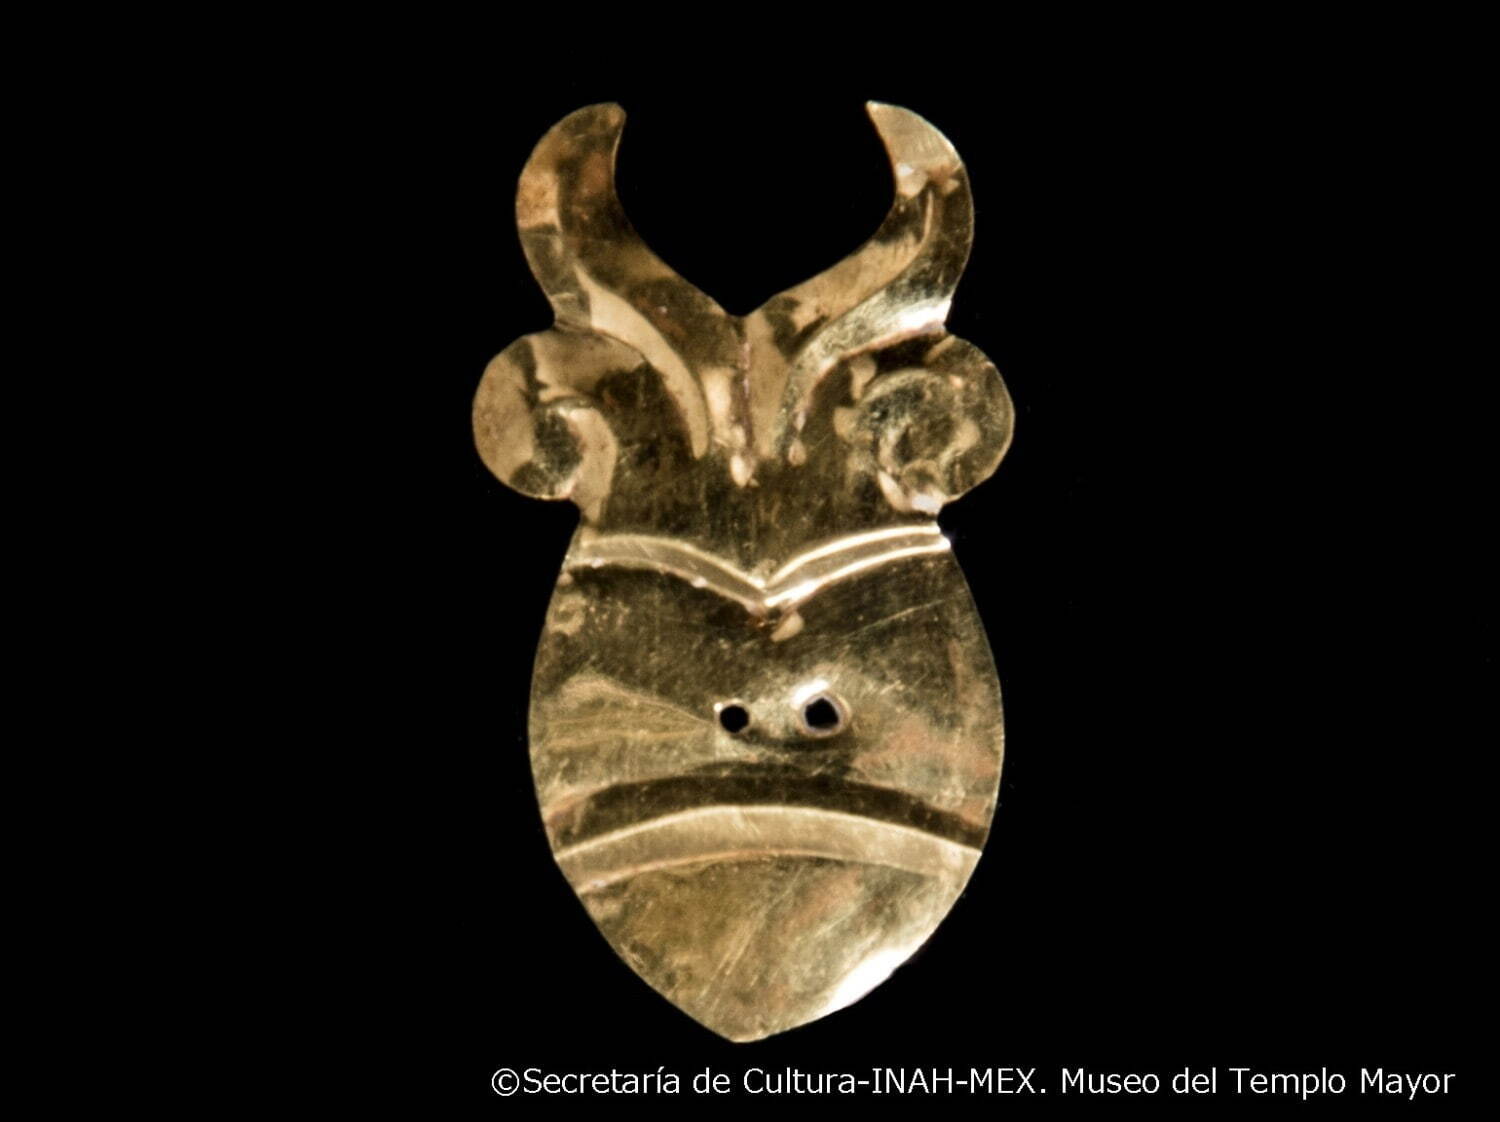 人の心臓形ペンダント
アステカ文明 1486-1502年 テンプロ・マヨール、埋納石室174出土
テンプロ・マヨール博物館蔵